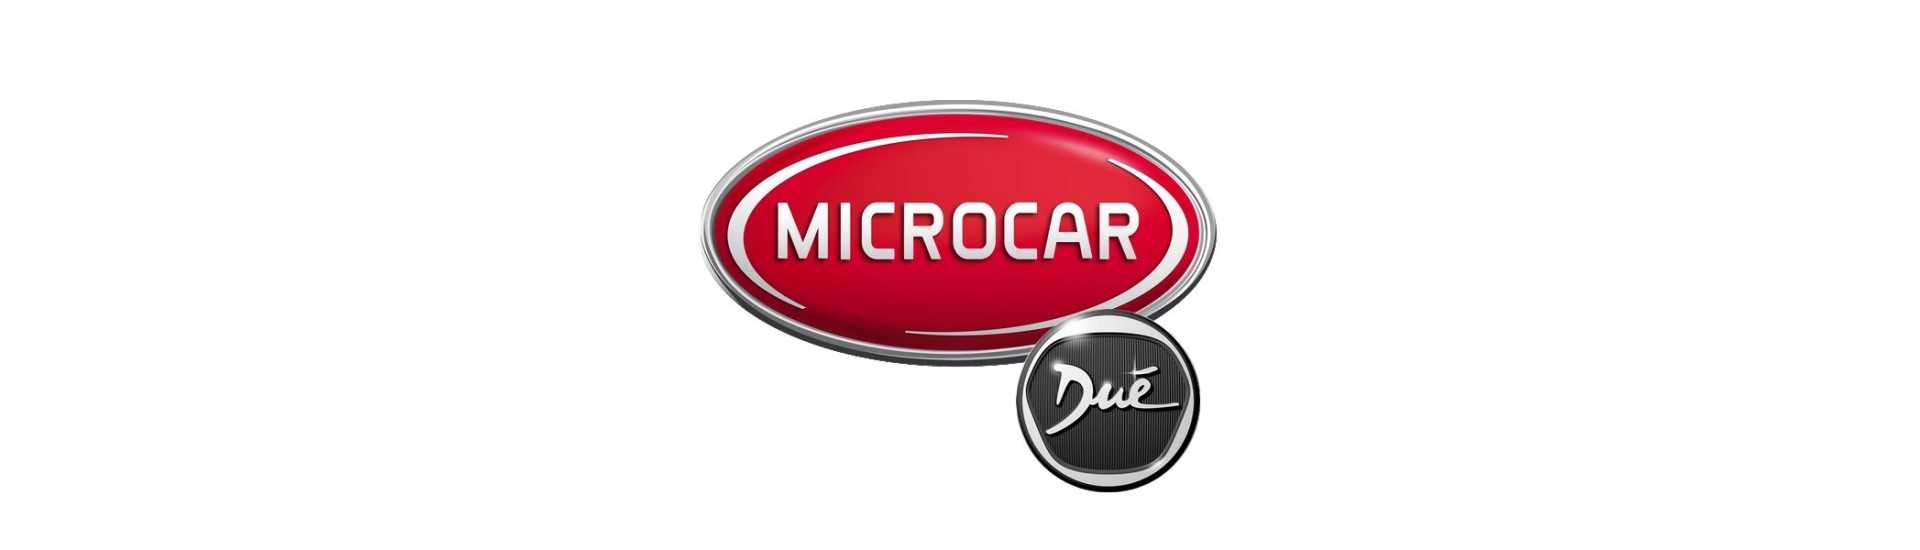 Roda de direção ao melhor preço do carro sem uma permissão Microcar Dué